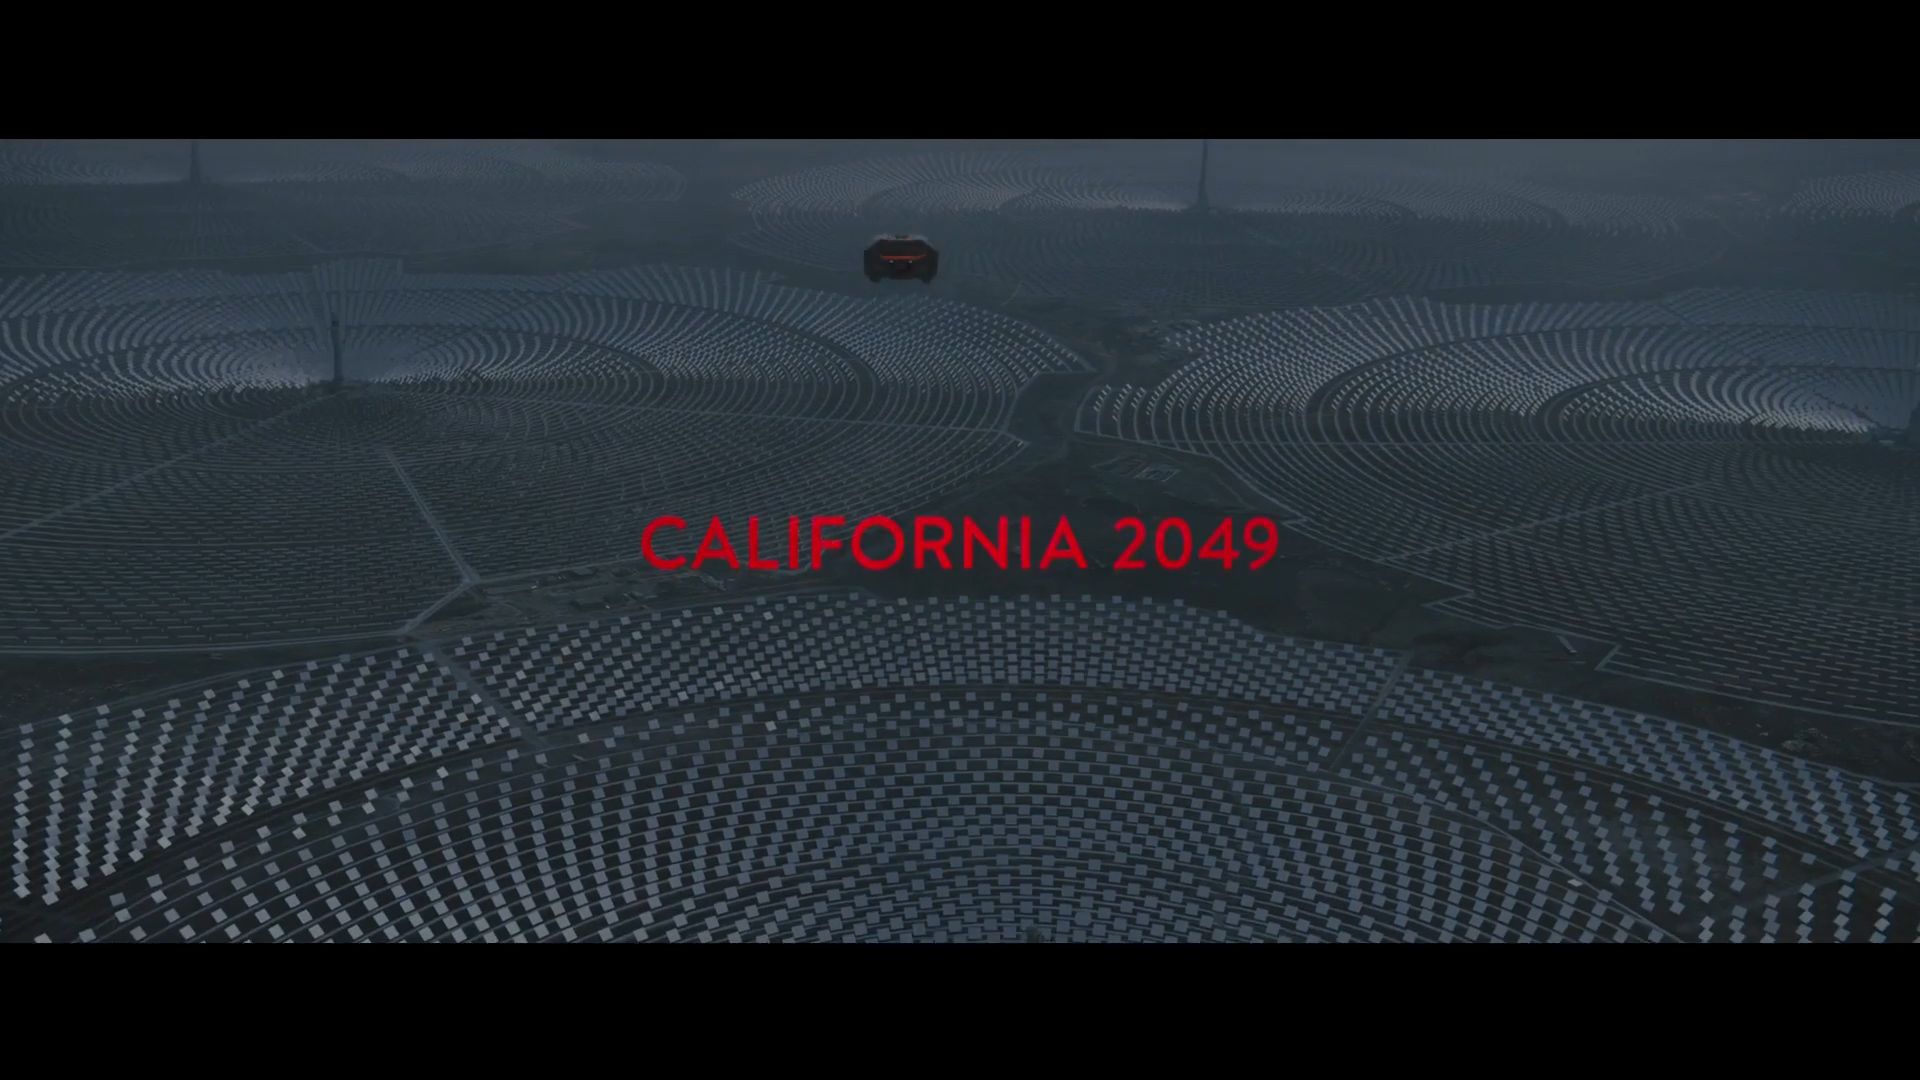 Gambaran Padang California dalam film Blade Runner 2049